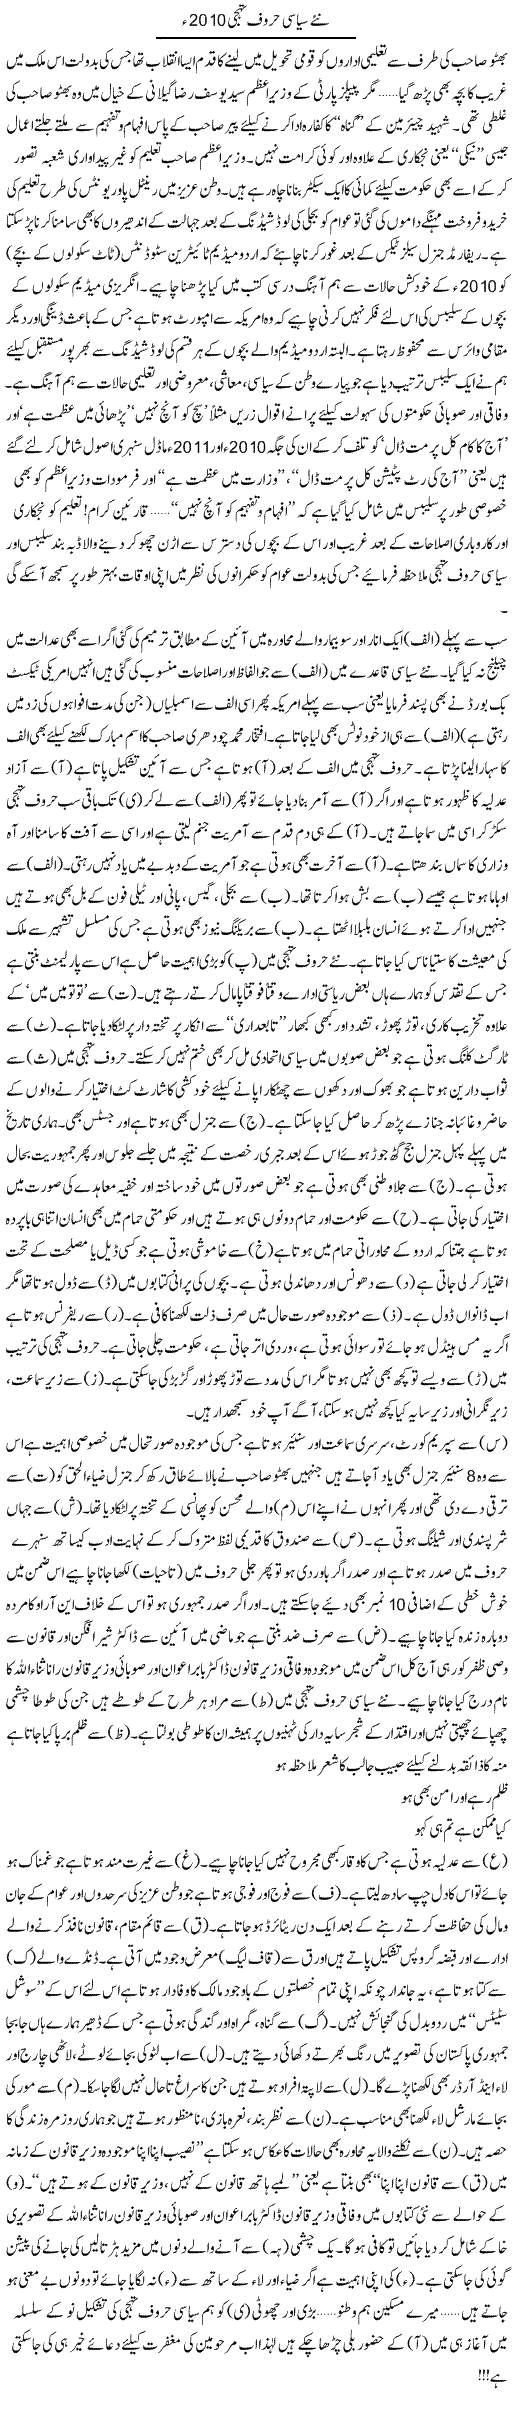 New Political ABC Express Column Tahir Sarwar 14 November 2010